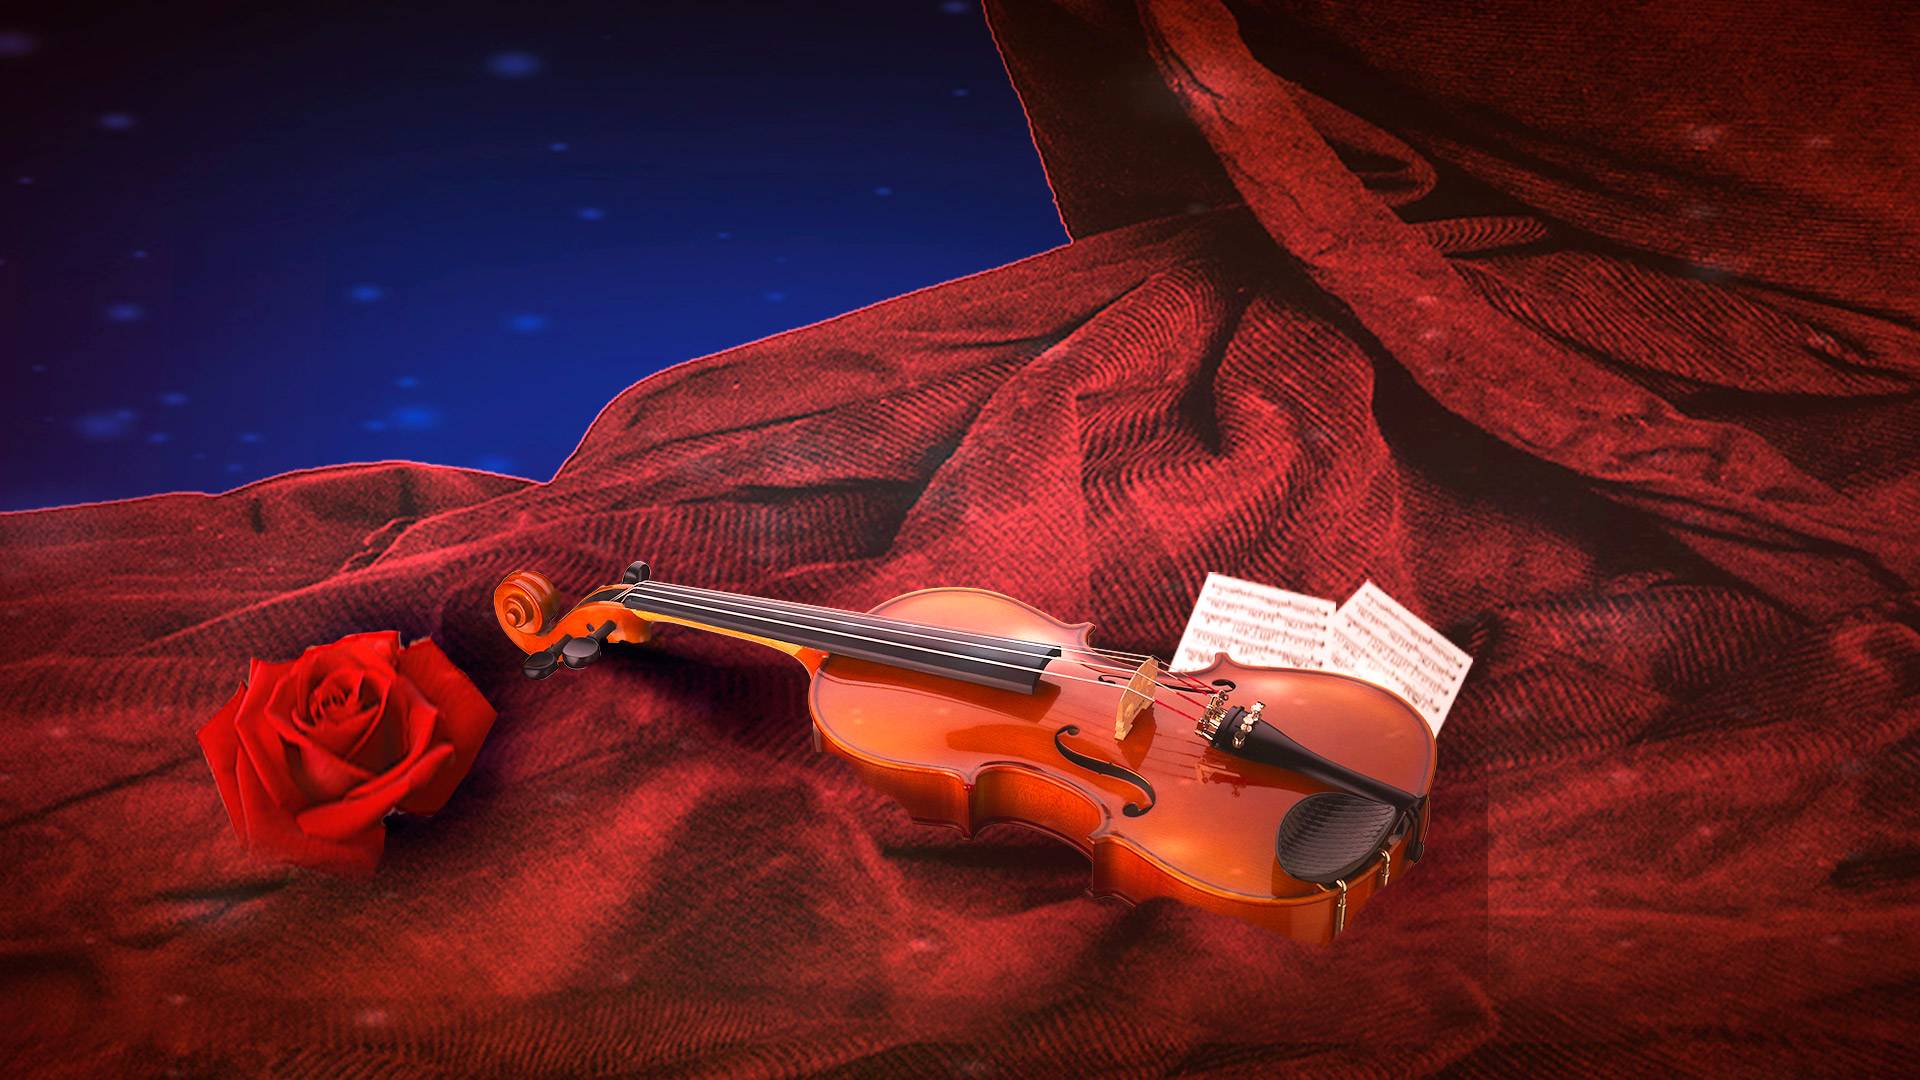 Вивальди 8. Антонио Вивальди скрипка. Скрипка на красивом фоне. Девушки со скрипкой. Скрипка и рояль.